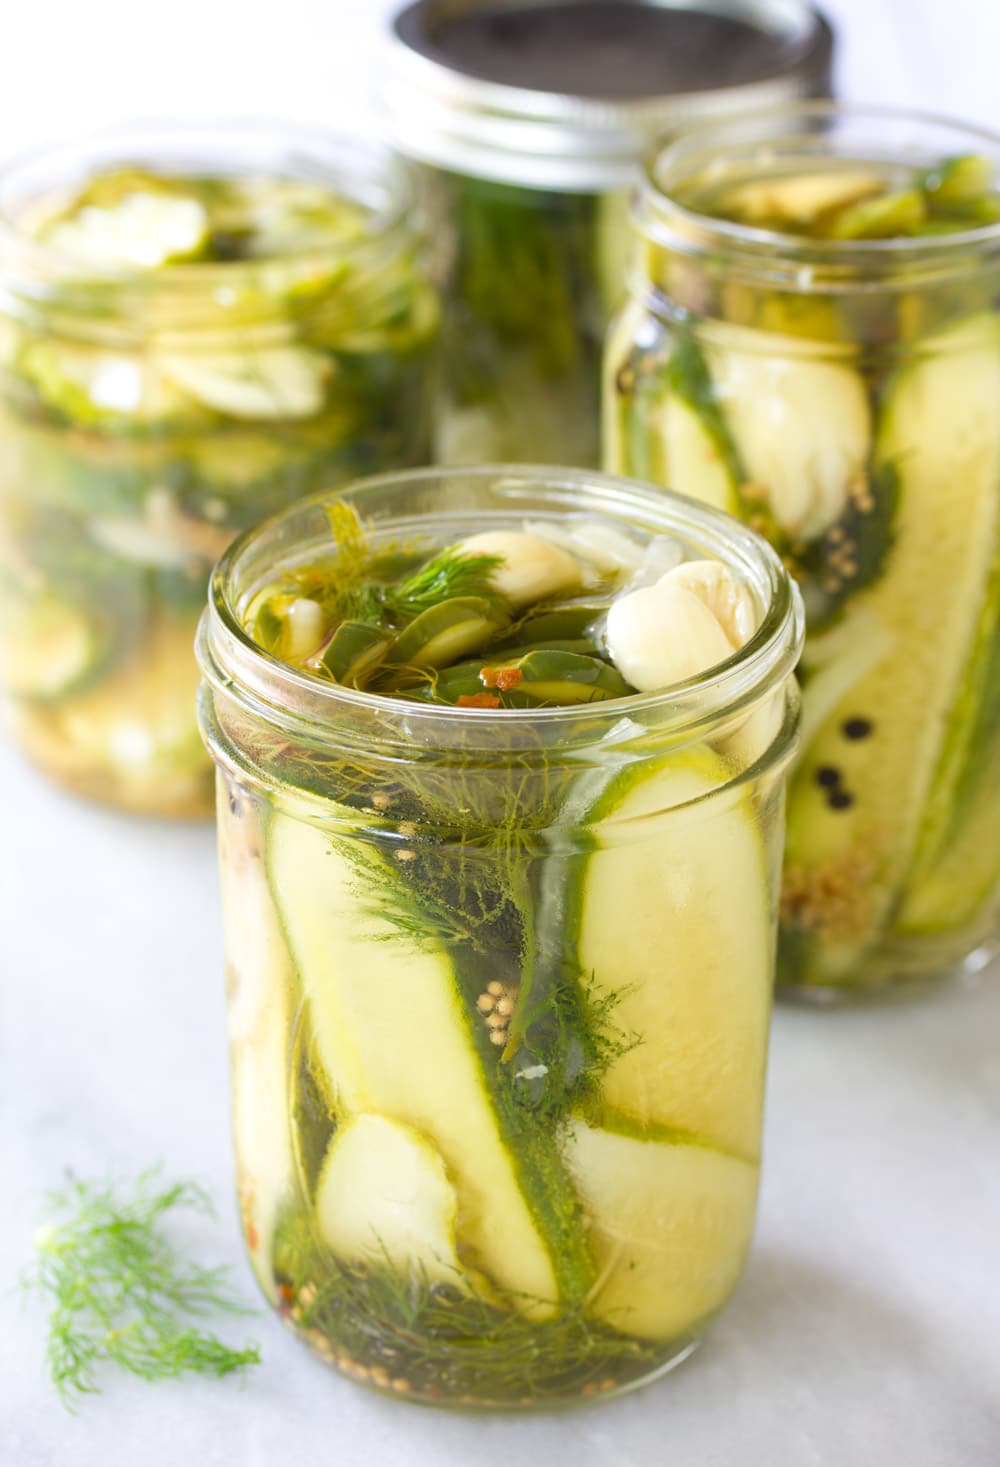 Jarred Pickled Cucumbers #ASpicyPerspective #Pickles #RefrigeratorPickles #HomemadePickles #PickleRecipe #HowtoMakePickles